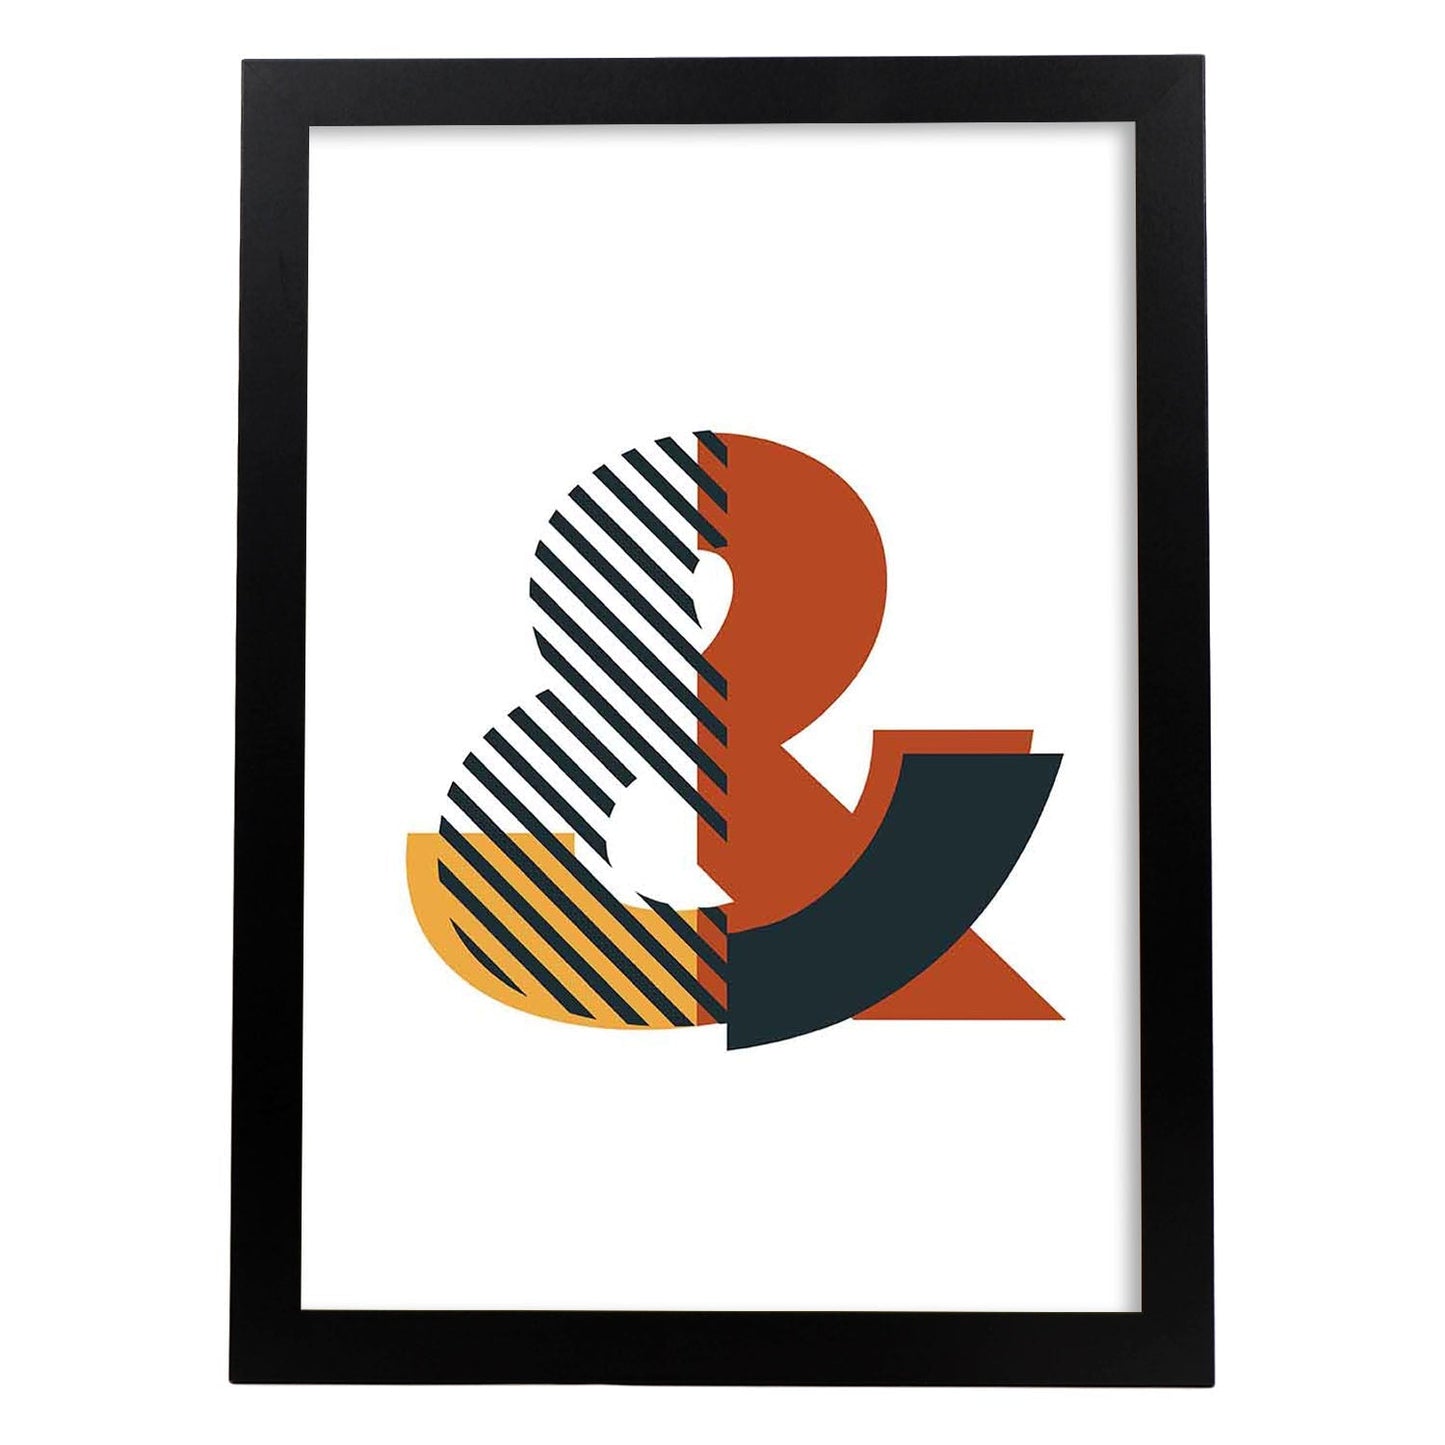 Poster de letra &. Lámina estilo Geometria con imágenes del alfabeto.-Artwork-Nacnic-A4-Marco Negro-Nacnic Estudio SL